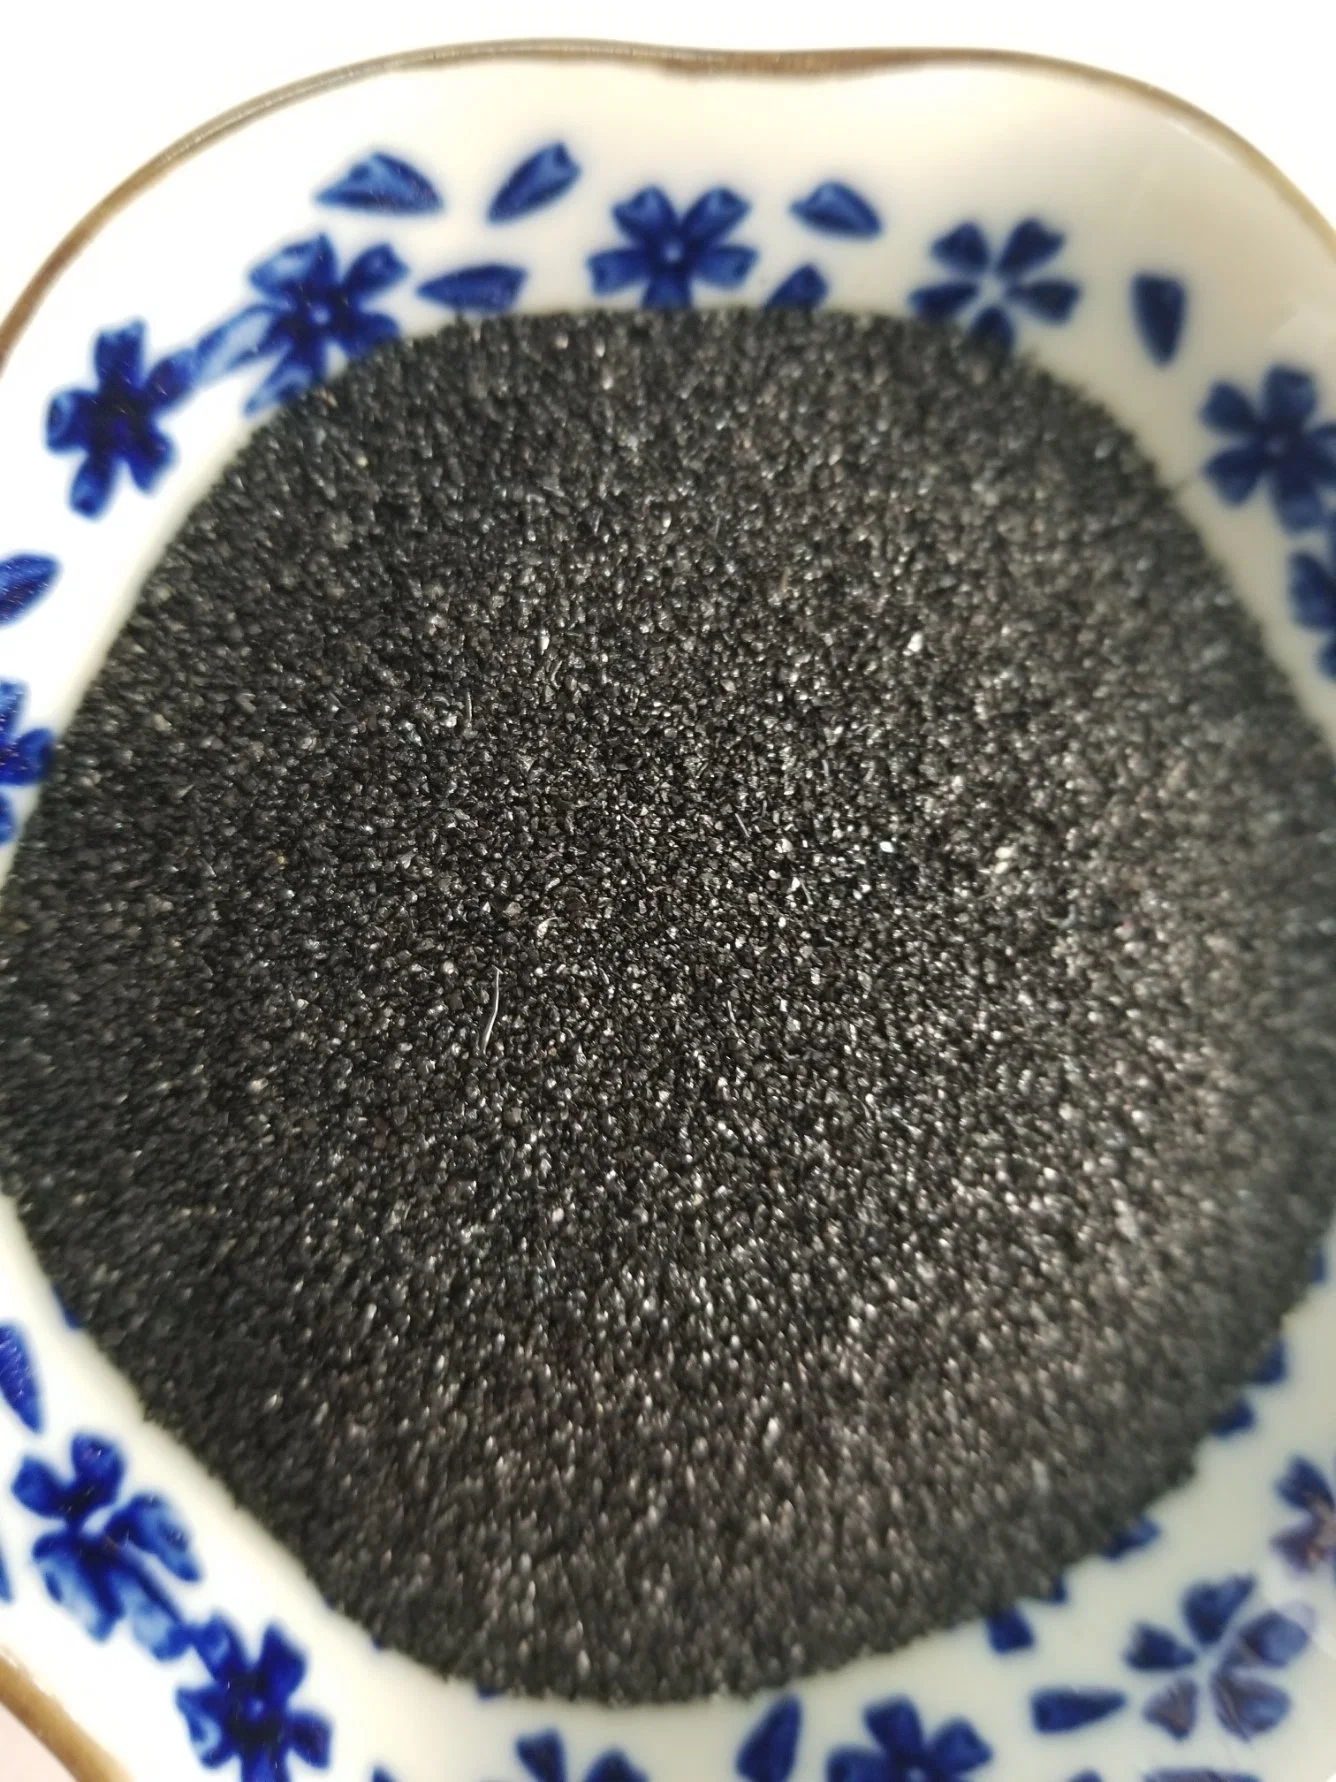 El esmeril negro Diamante de carburo de silicio abrasivo arena arenado/PULIDORA